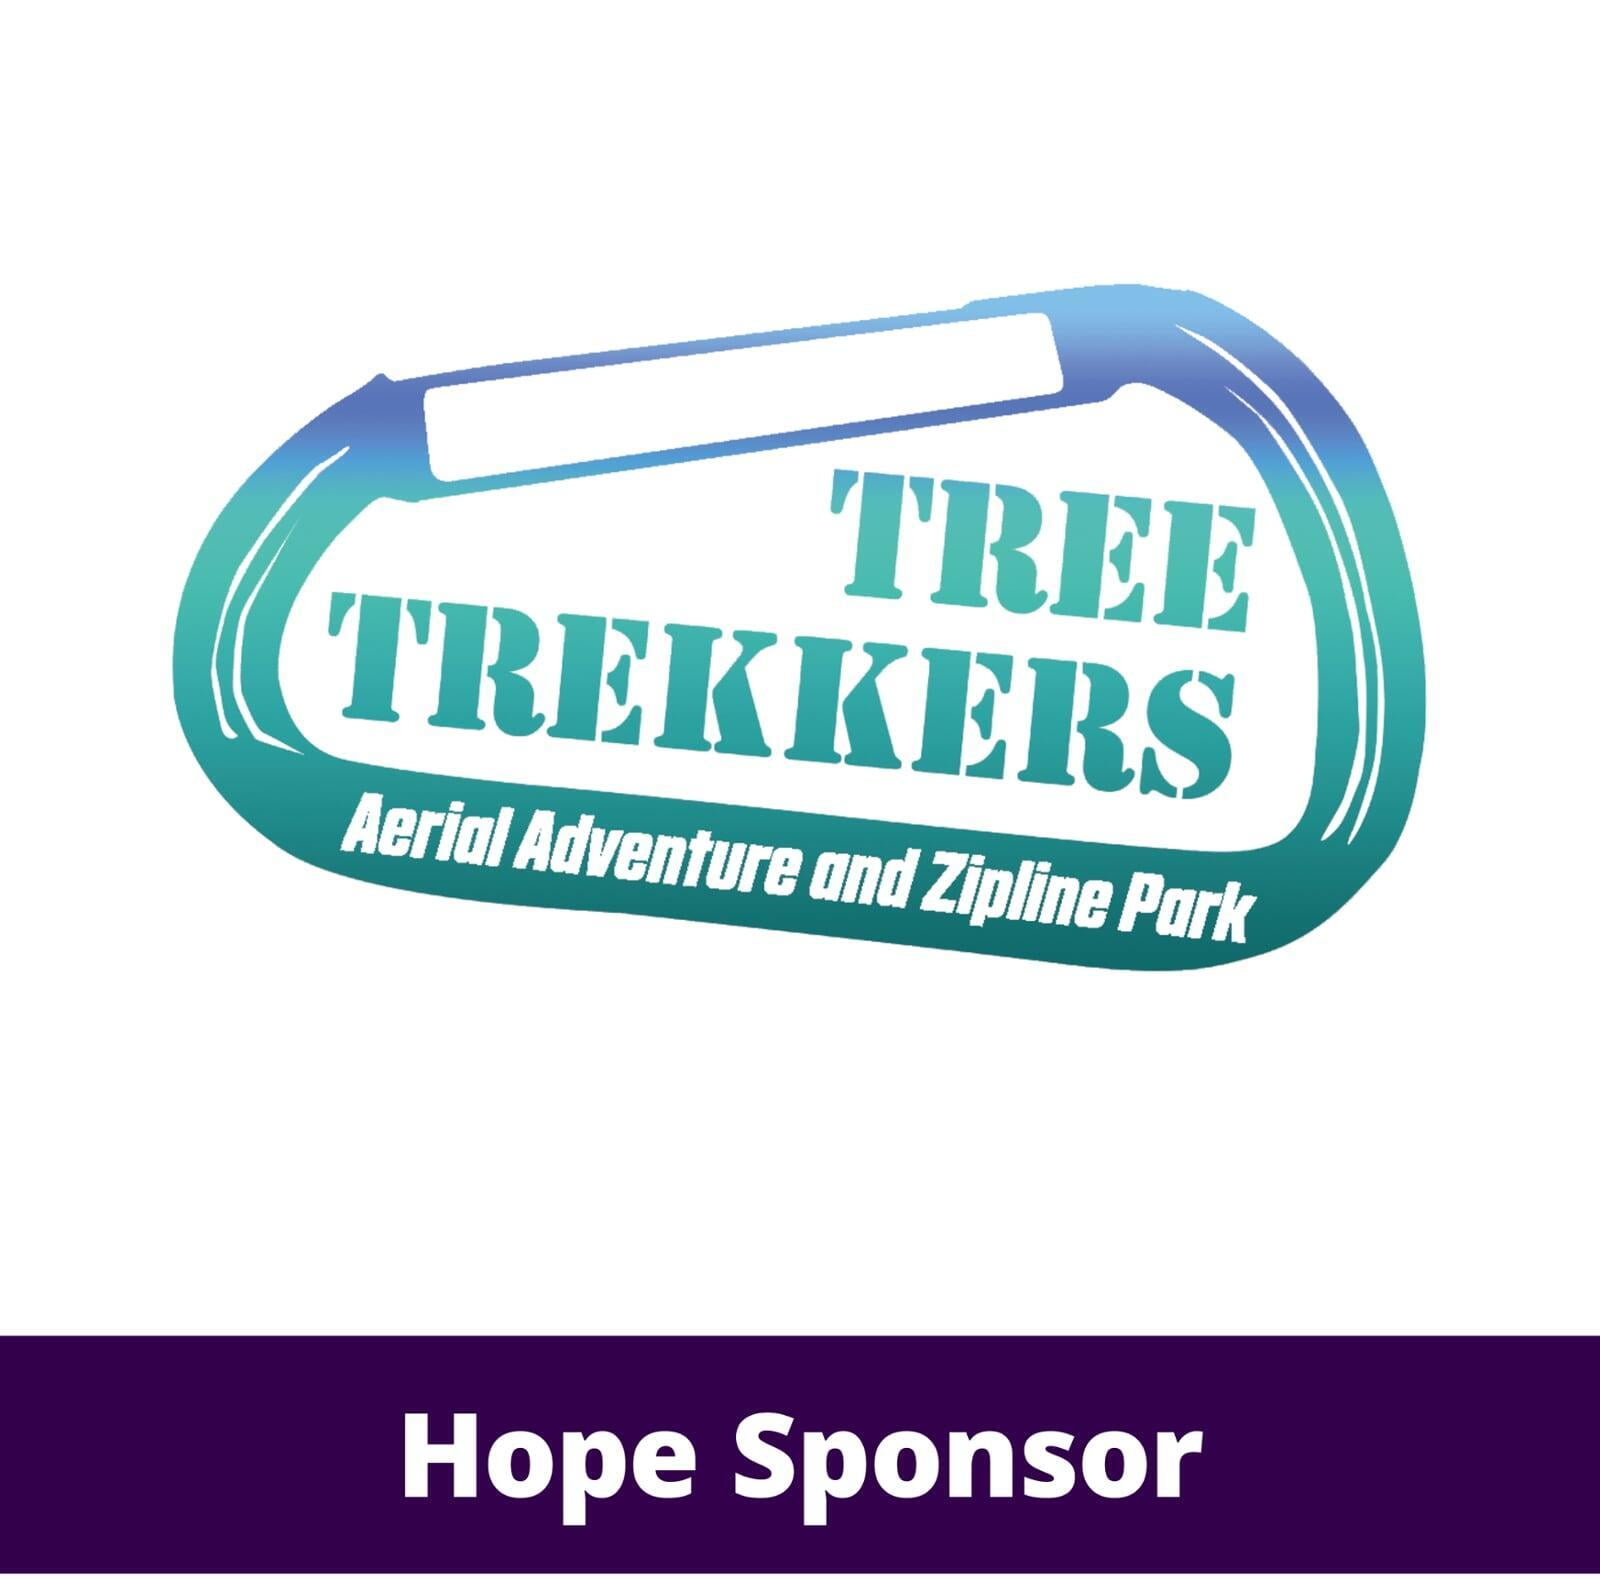 Tree Trekkers Aerial Adventure and Zipline Park logo